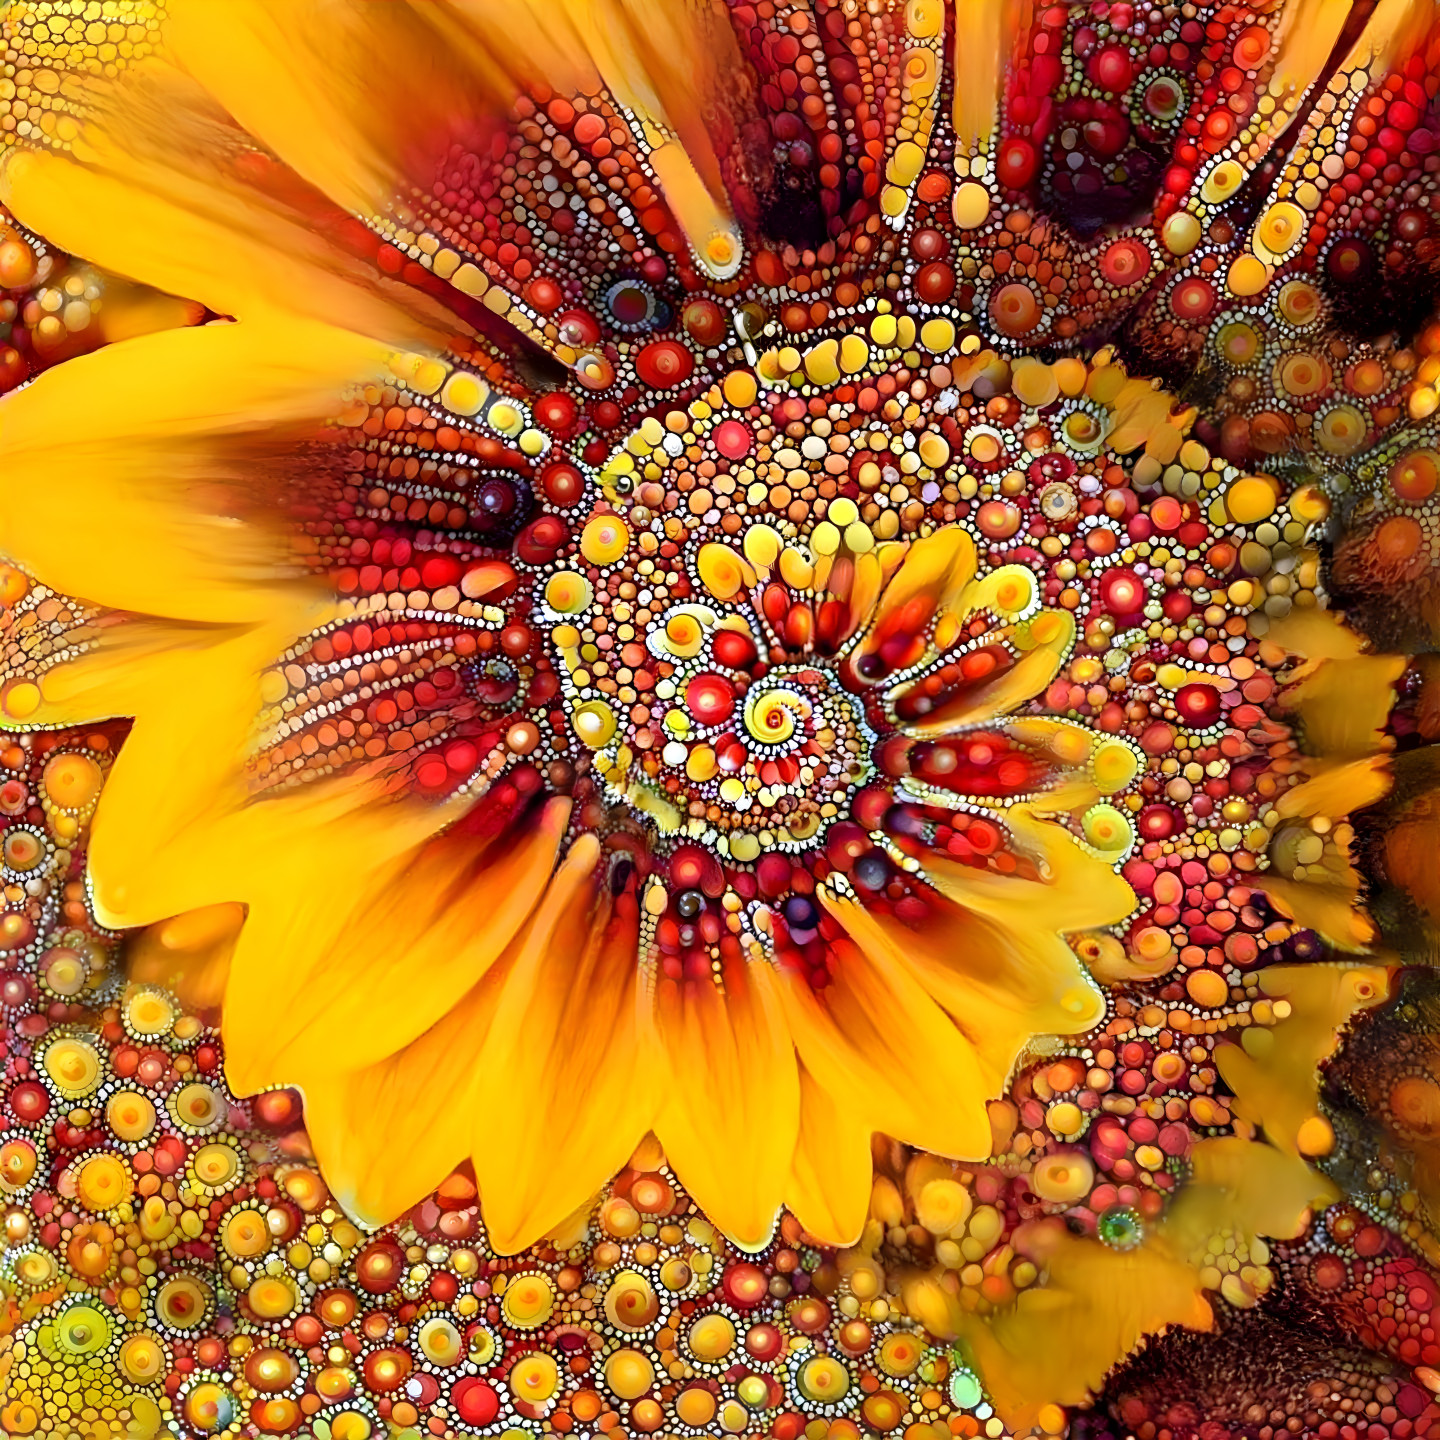 A Rare Sunflower Spiral 